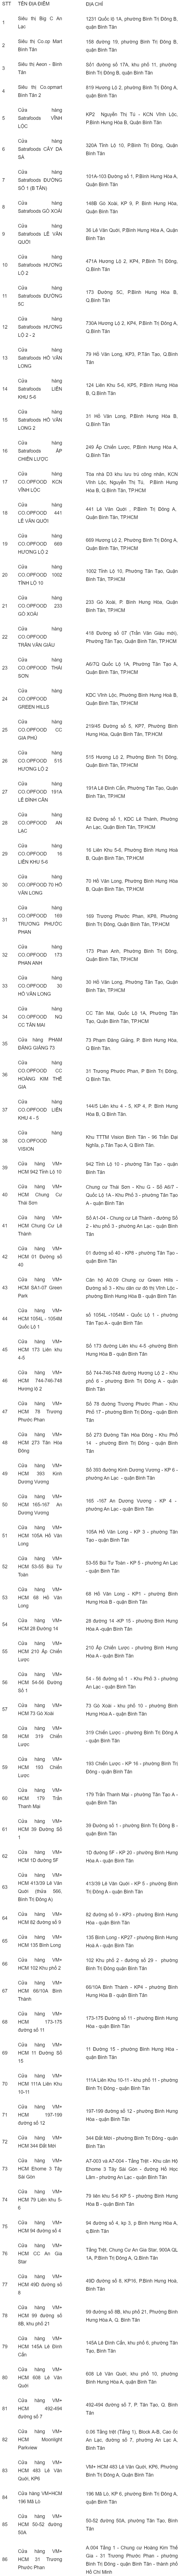 list of Binh Tan masks